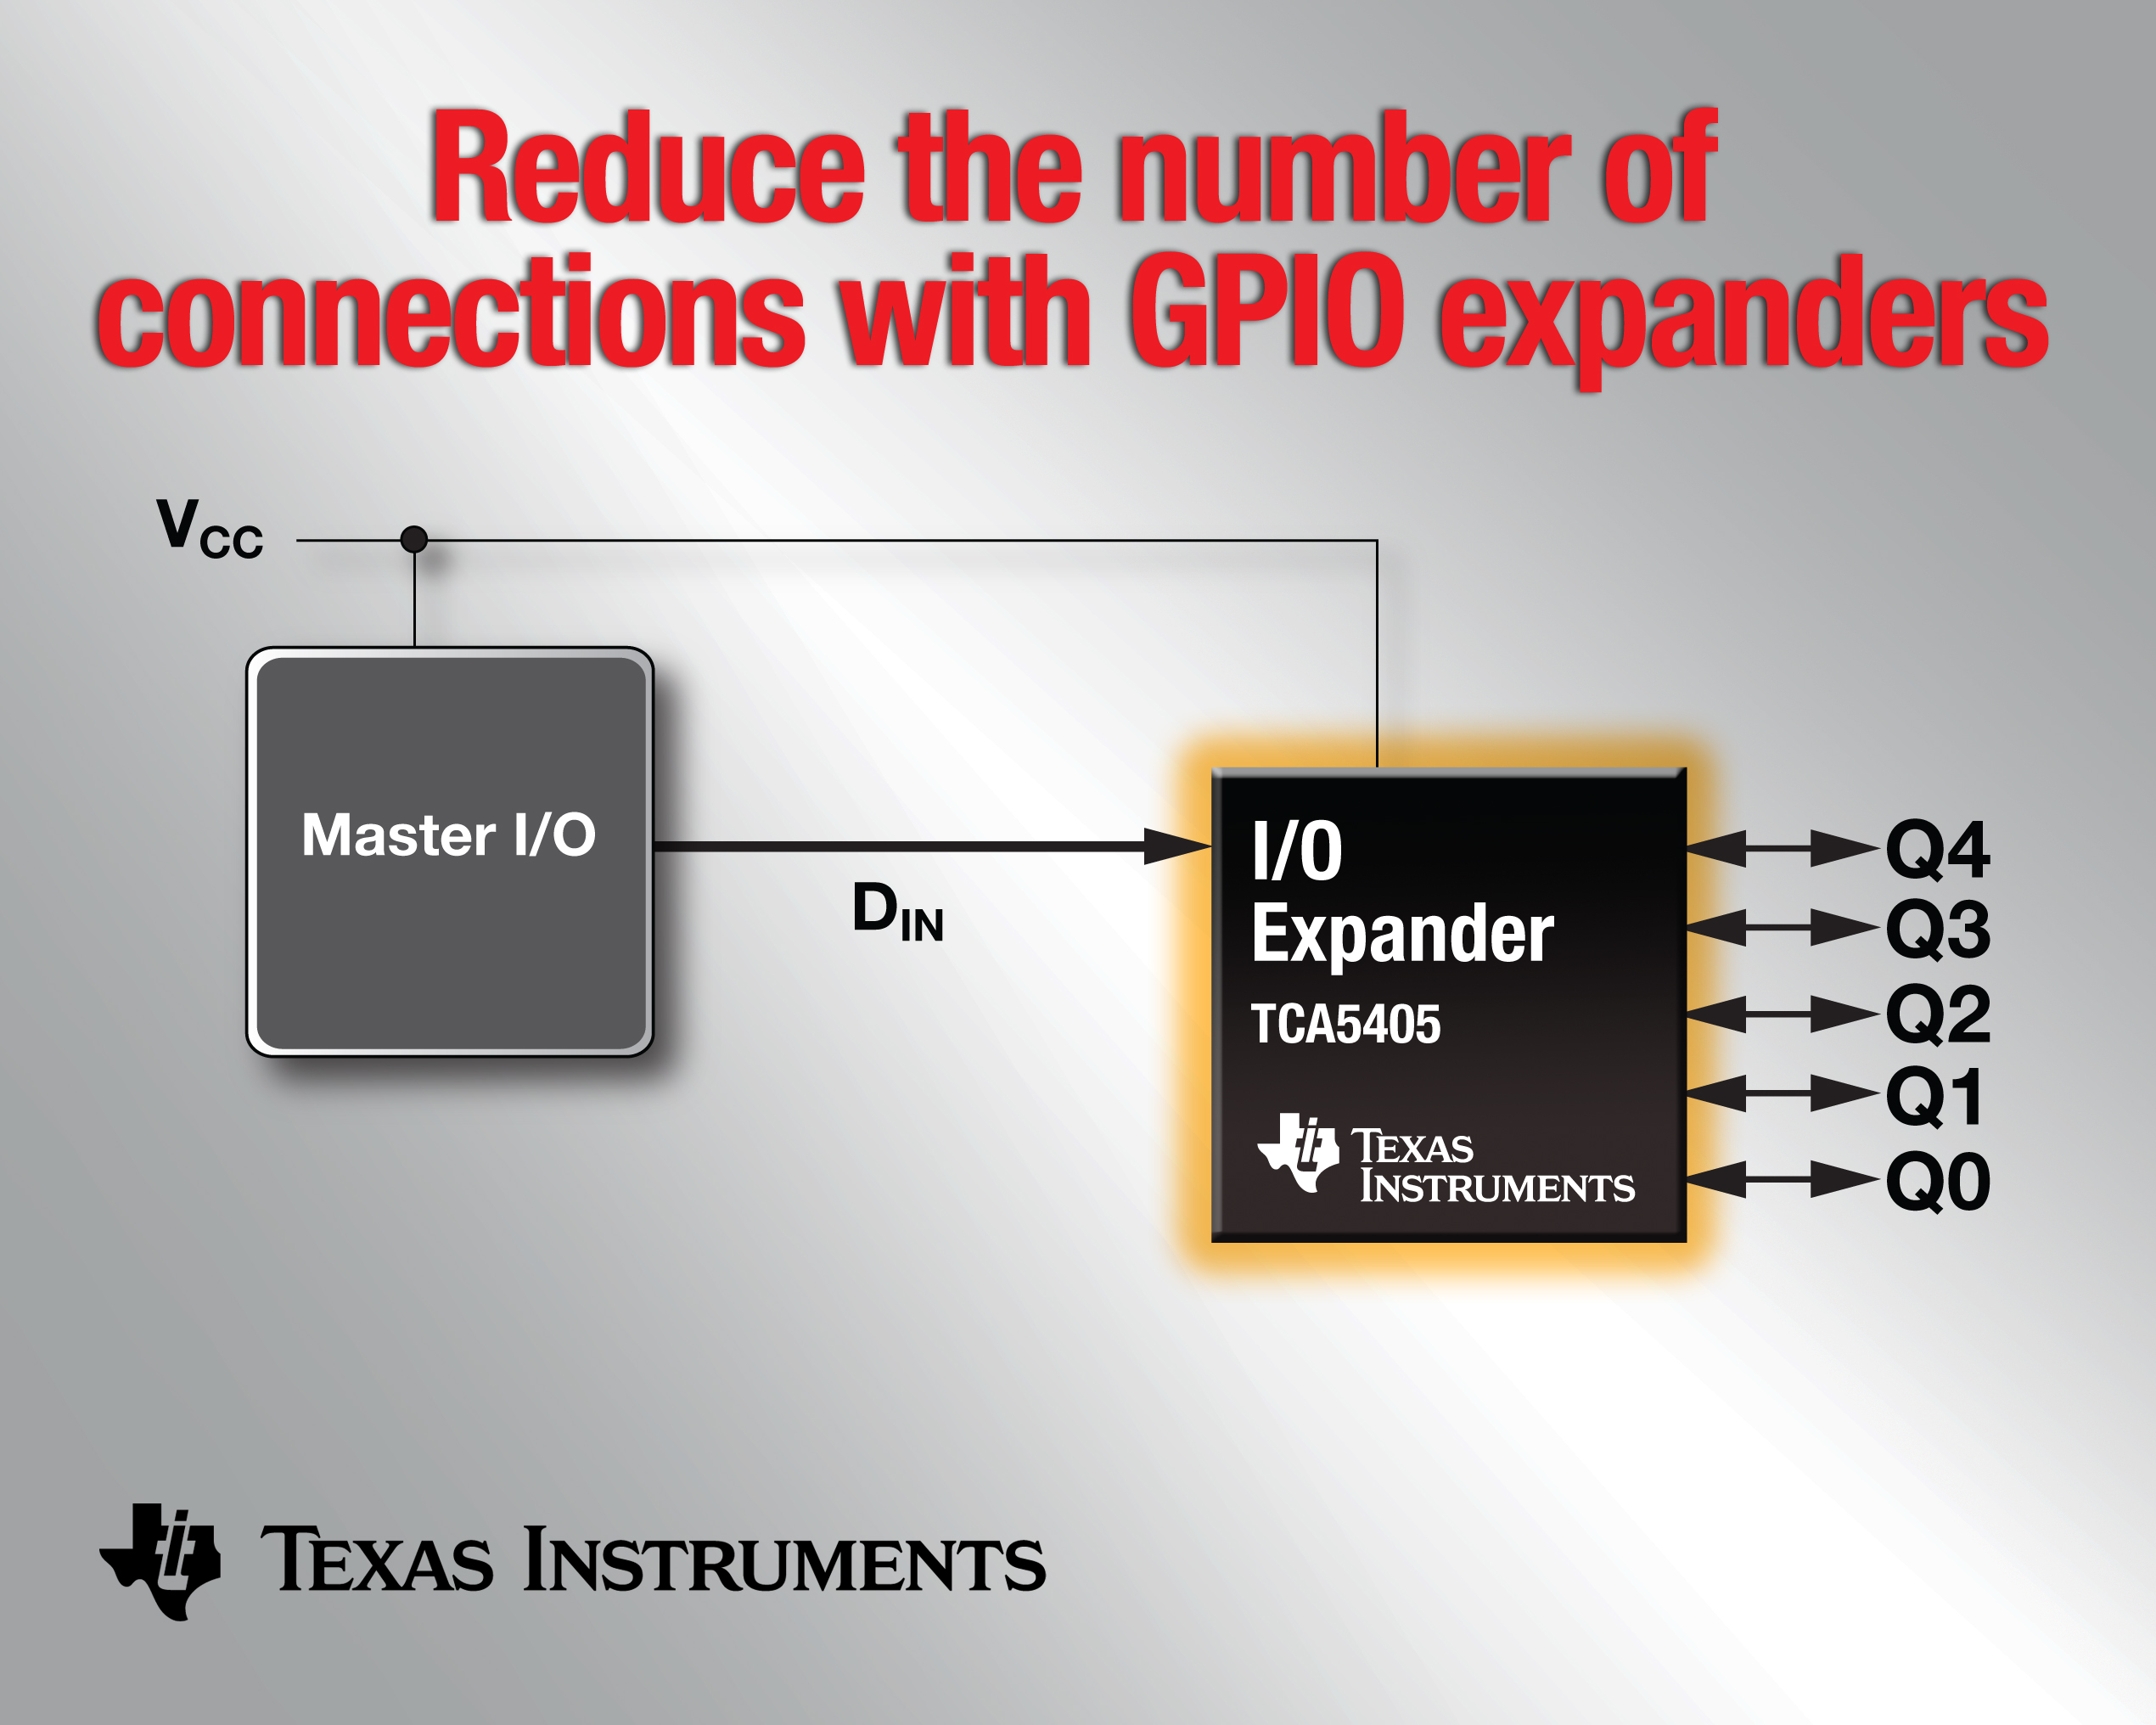 德州仪器推出业界最小型单线 I/O 扩展器